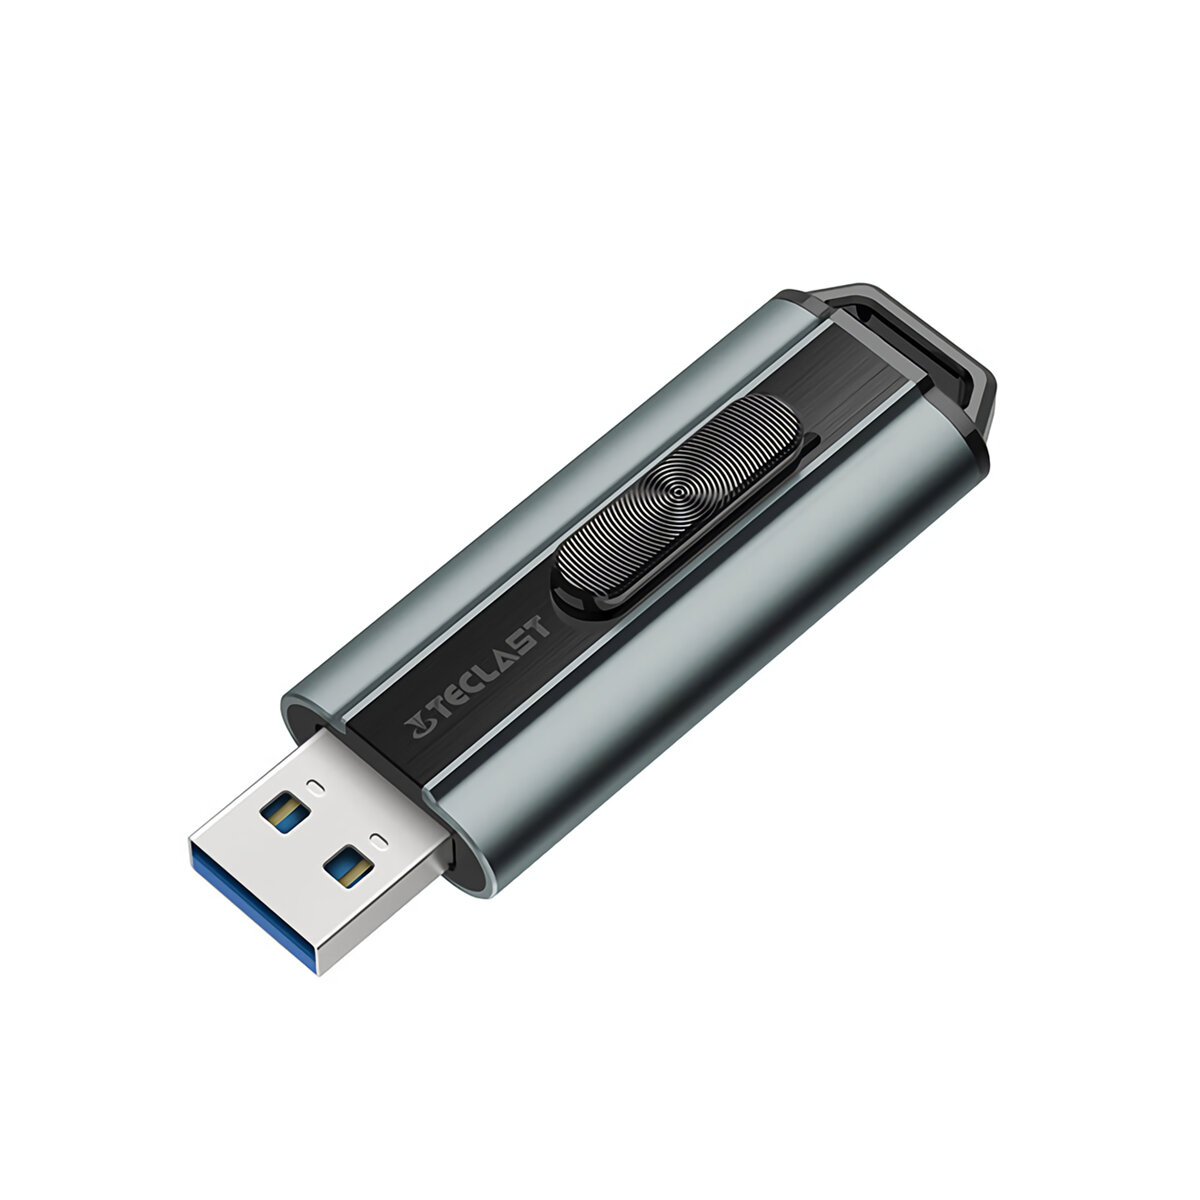 

Teclact CoolFlash Fl 3.0 USB Flash Drive USB 3.0 High Speed 32GB/64GB/128GB Metal Flash Memory USB Stick Pen Drive U Dis